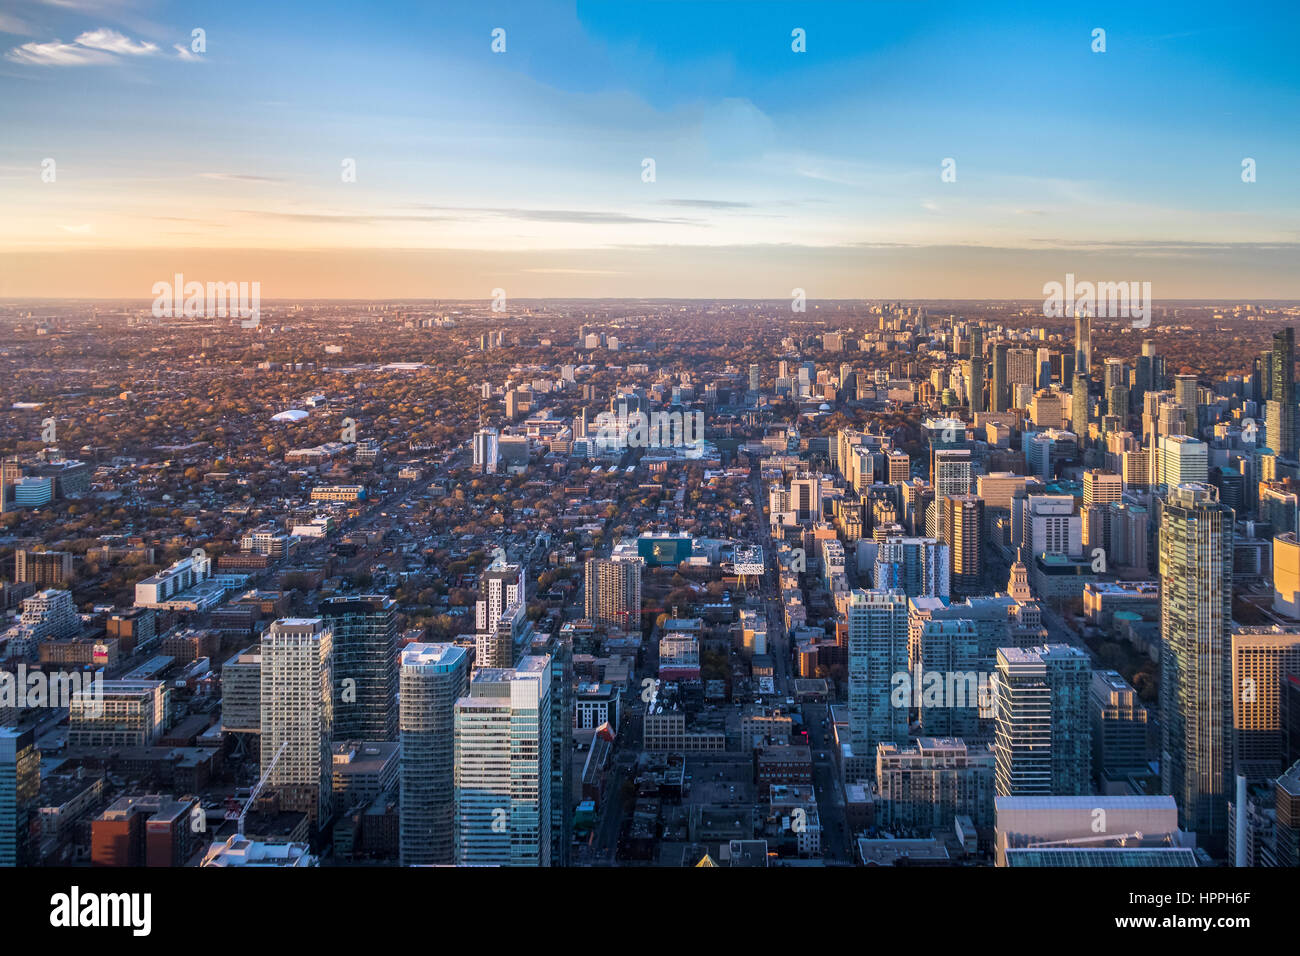 Vista desde arriba de la ciudad de Toronto - Toronto, Ontario, Canadá Foto de stock